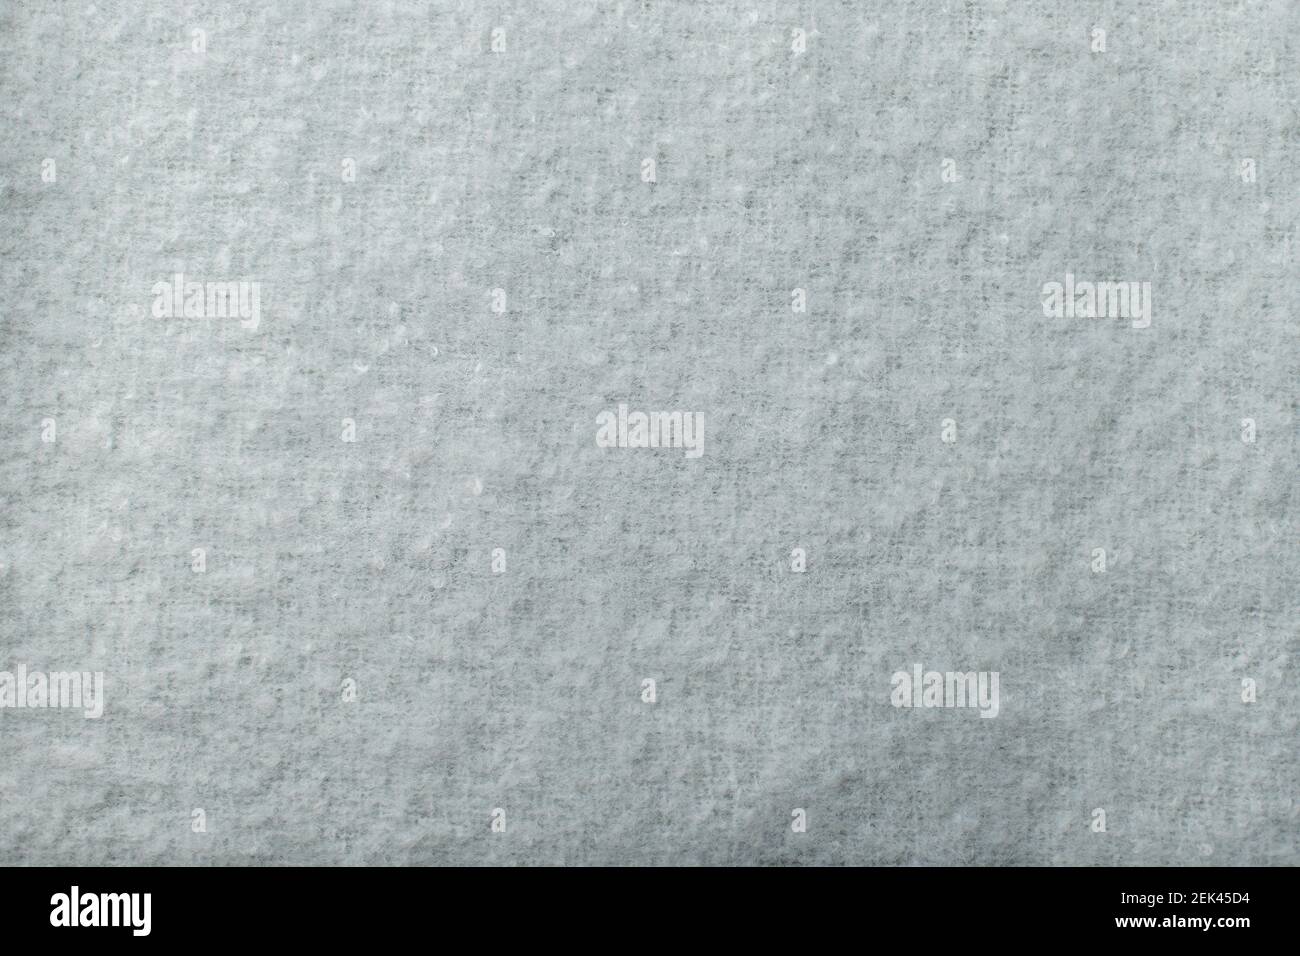 Tessuto morbido immagini e fotografie stock ad alta risoluzione - Alamy